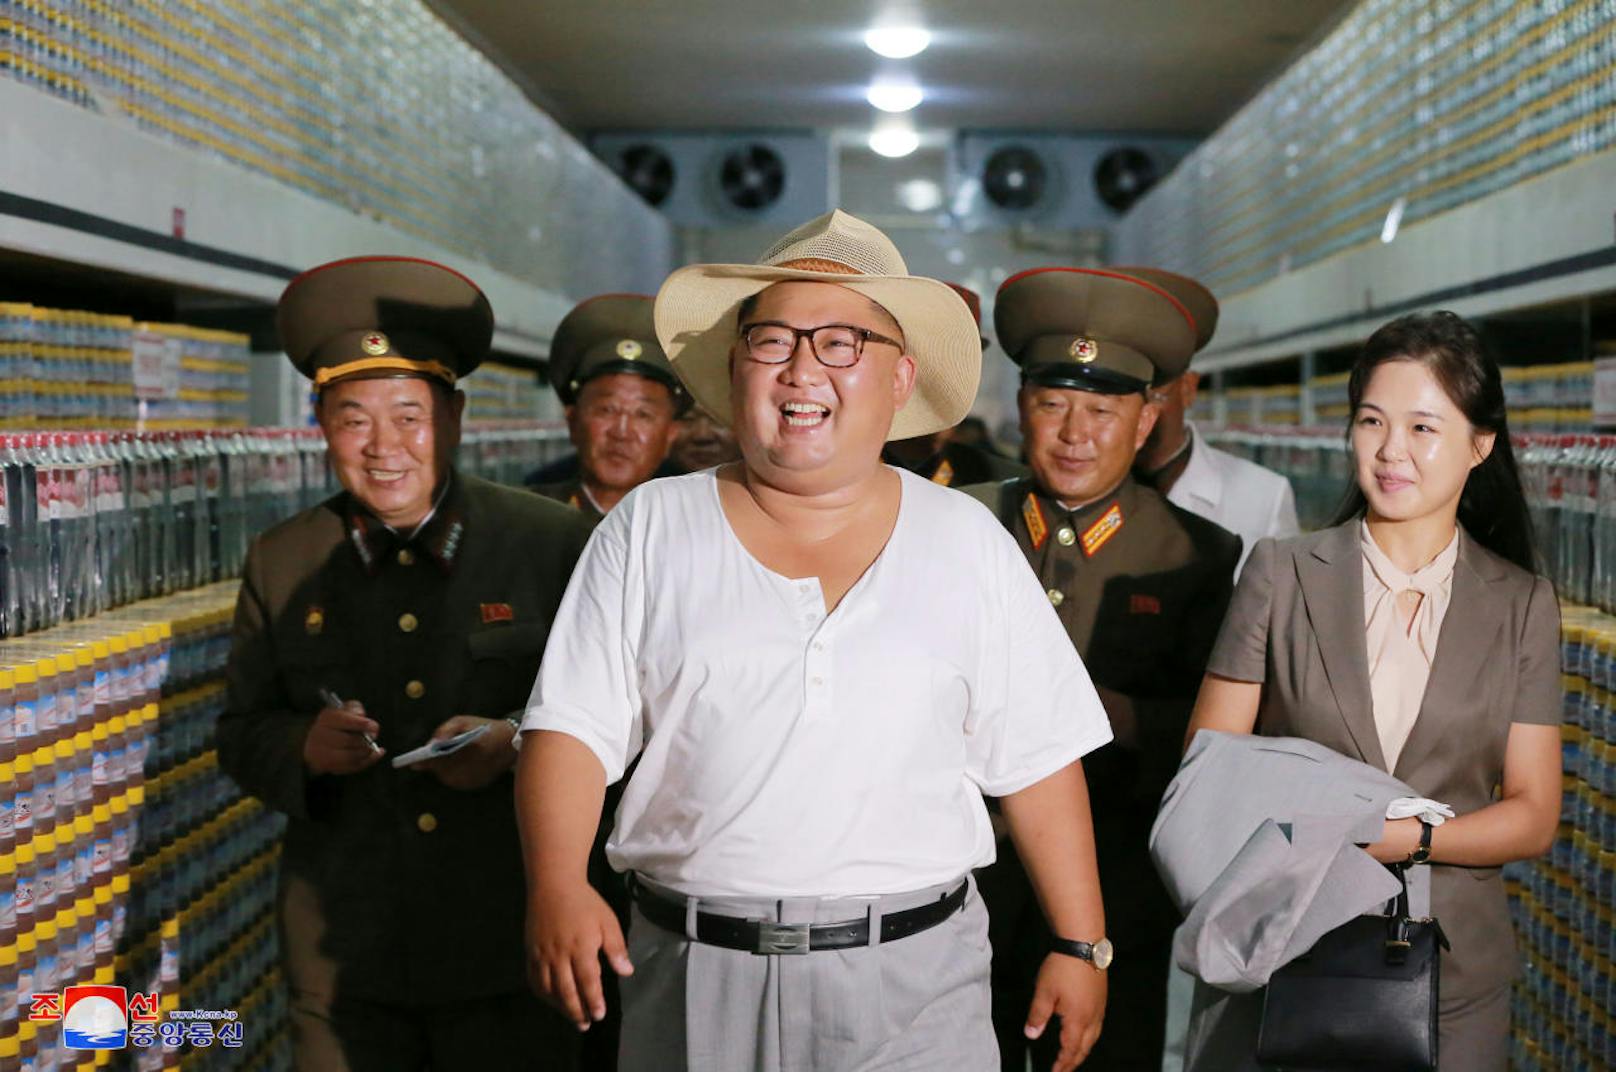 ... Kim (hier mit seiner Frau) zufrieden zu sein - ganz offensichtlich zur Erleichterung seiner Generäle.